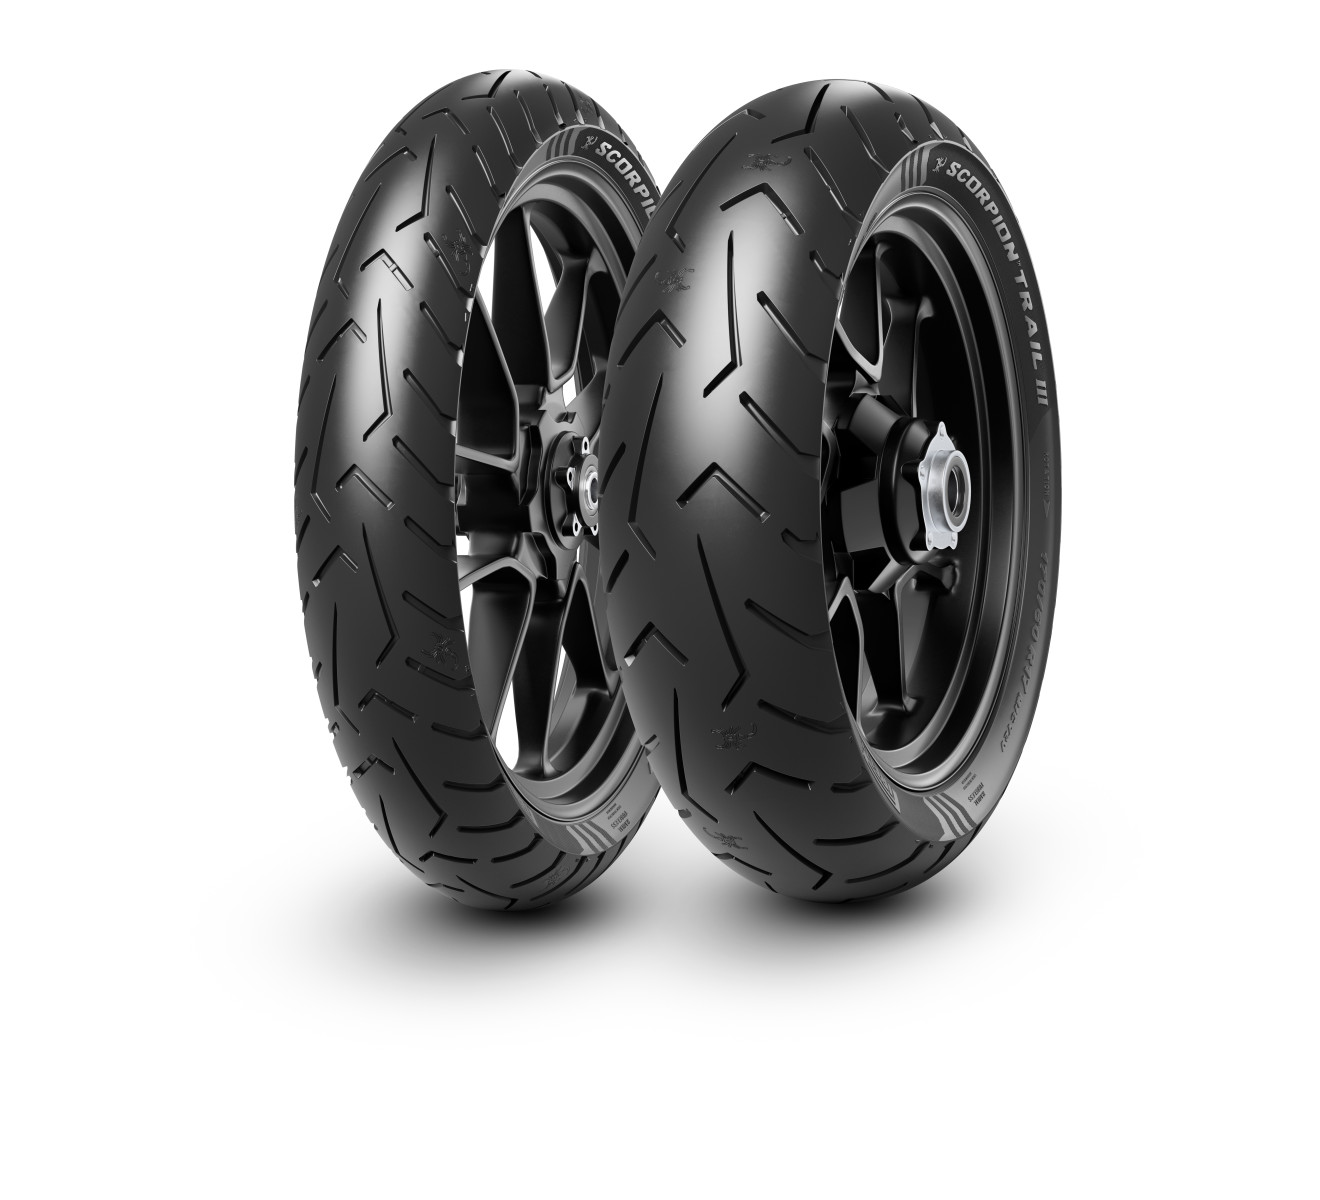 Gomme Nuove Pirelli 100/90 R19 57V SCORPION TRAIL III FRONT pneumatici nuovi Estivo